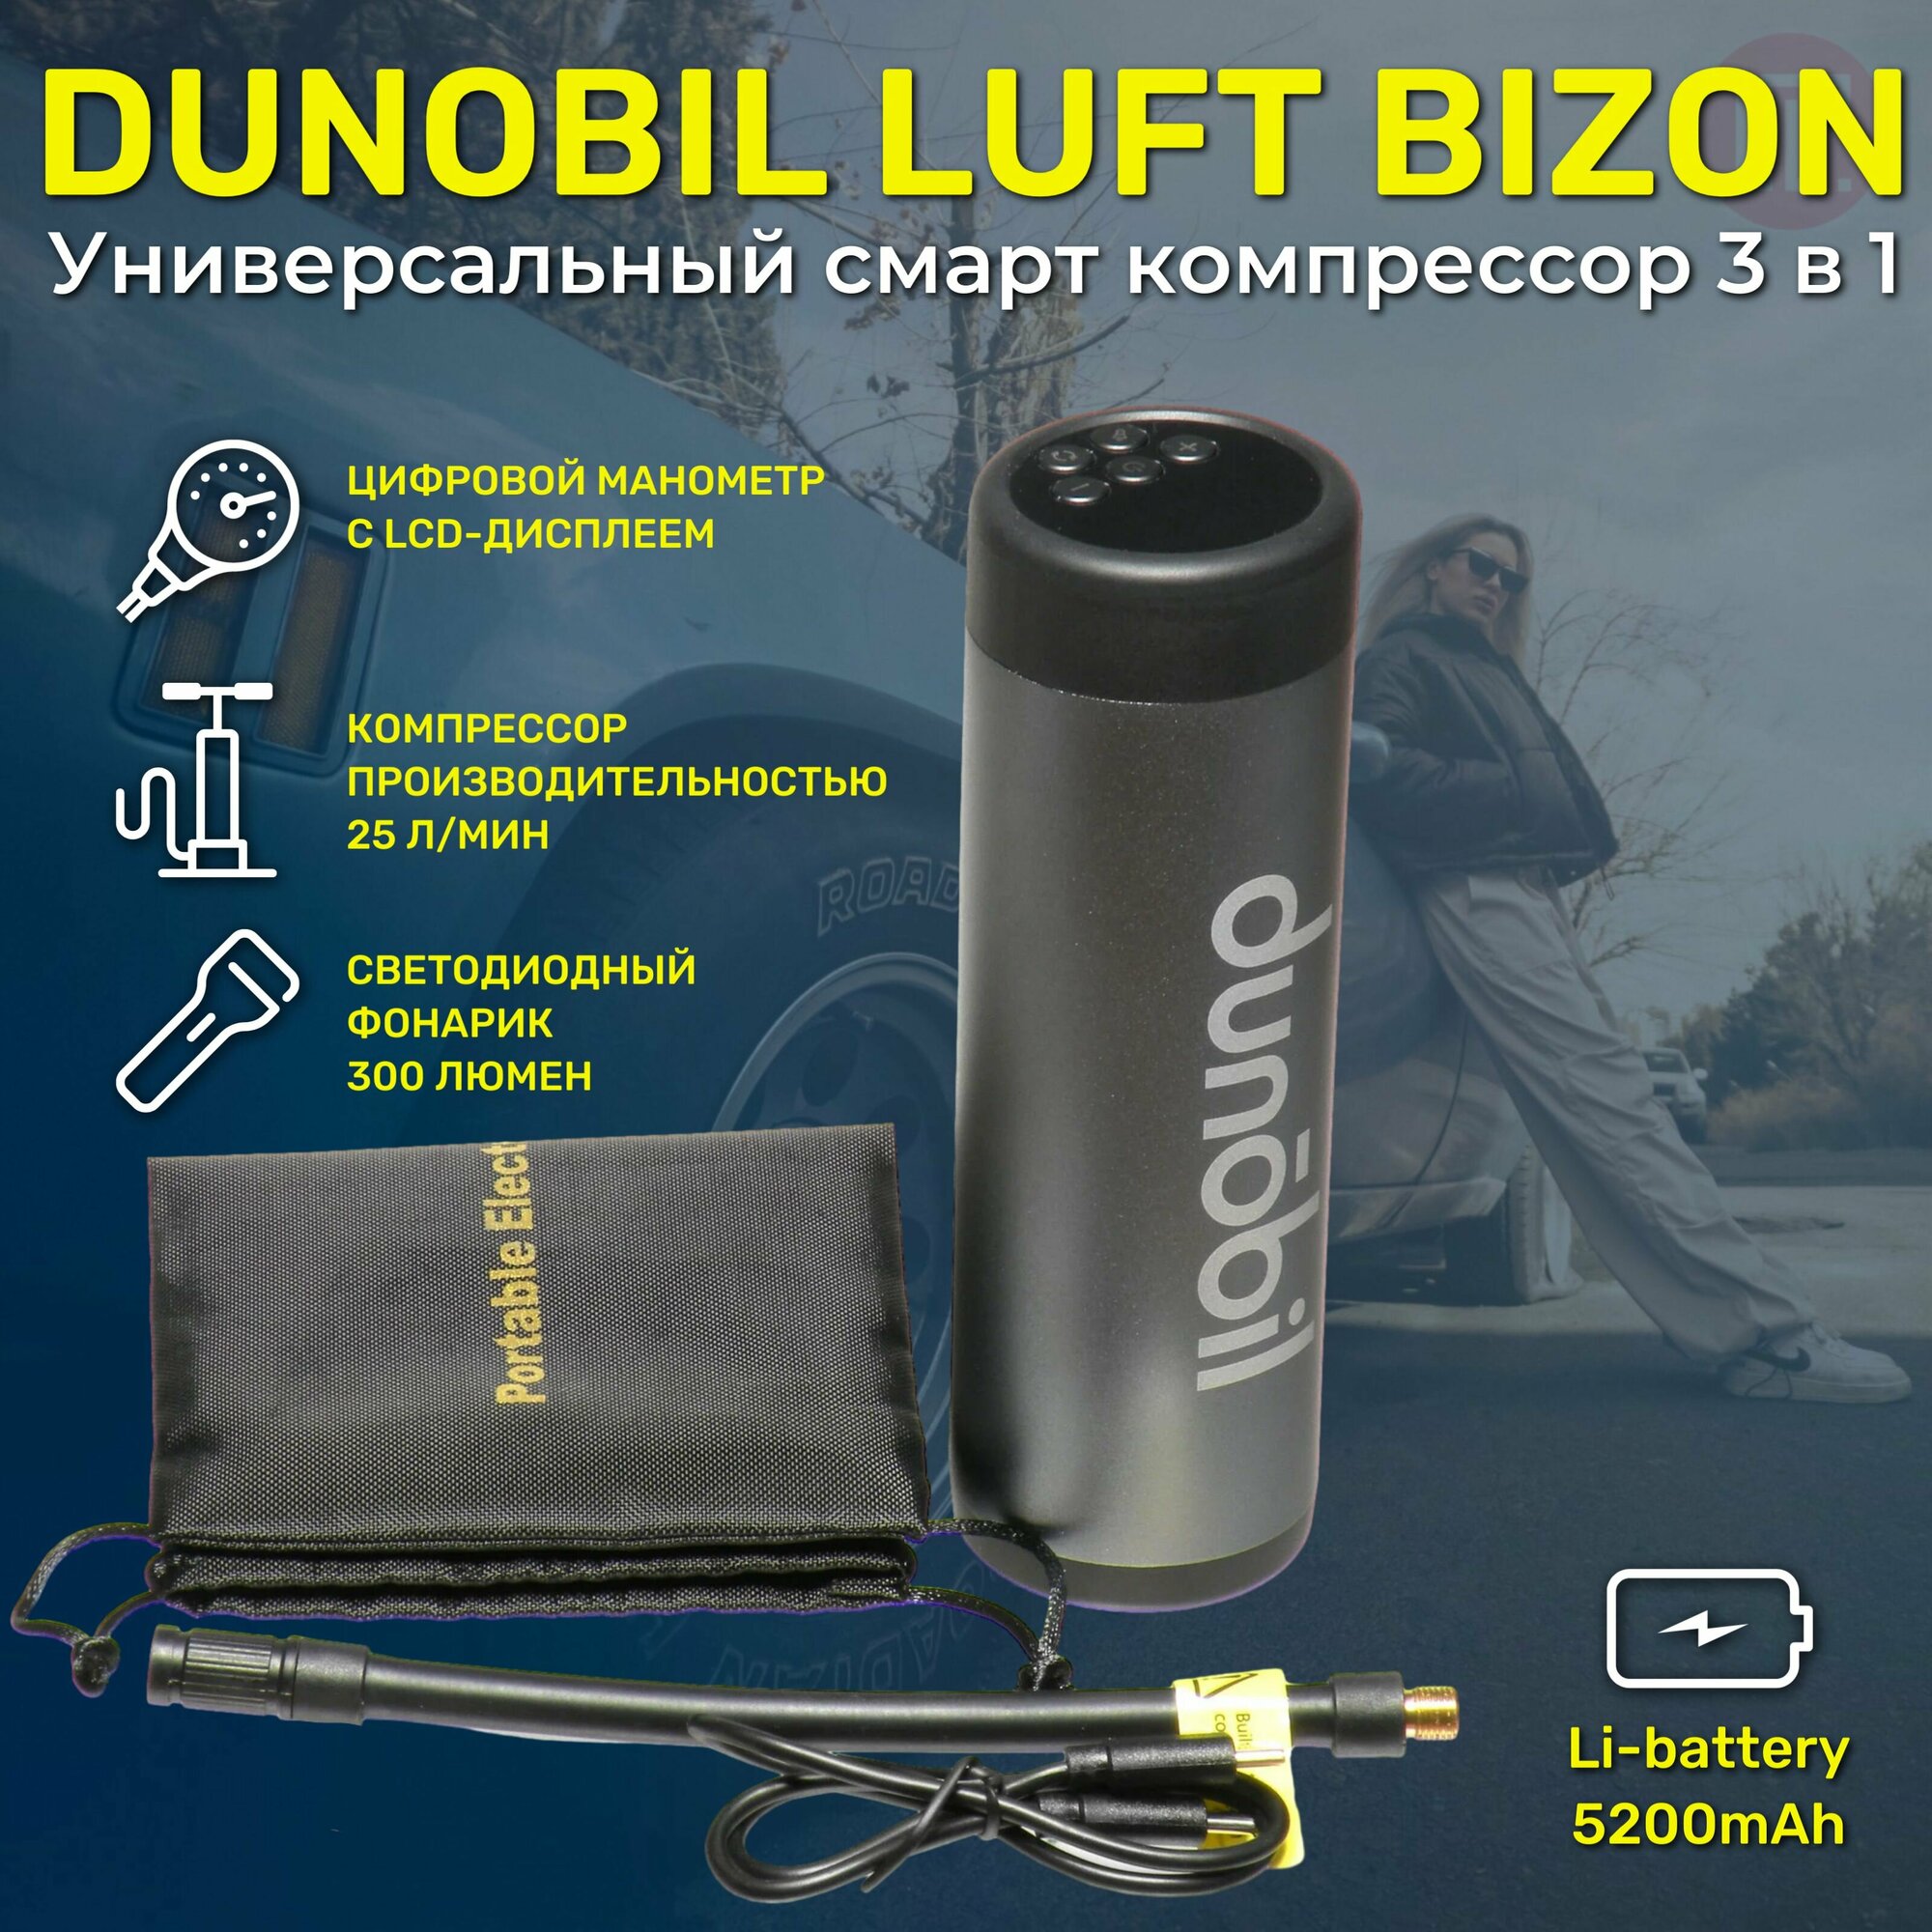 Автомобильный компрессор Dunobil Luft Bizon (hdmxjfy)